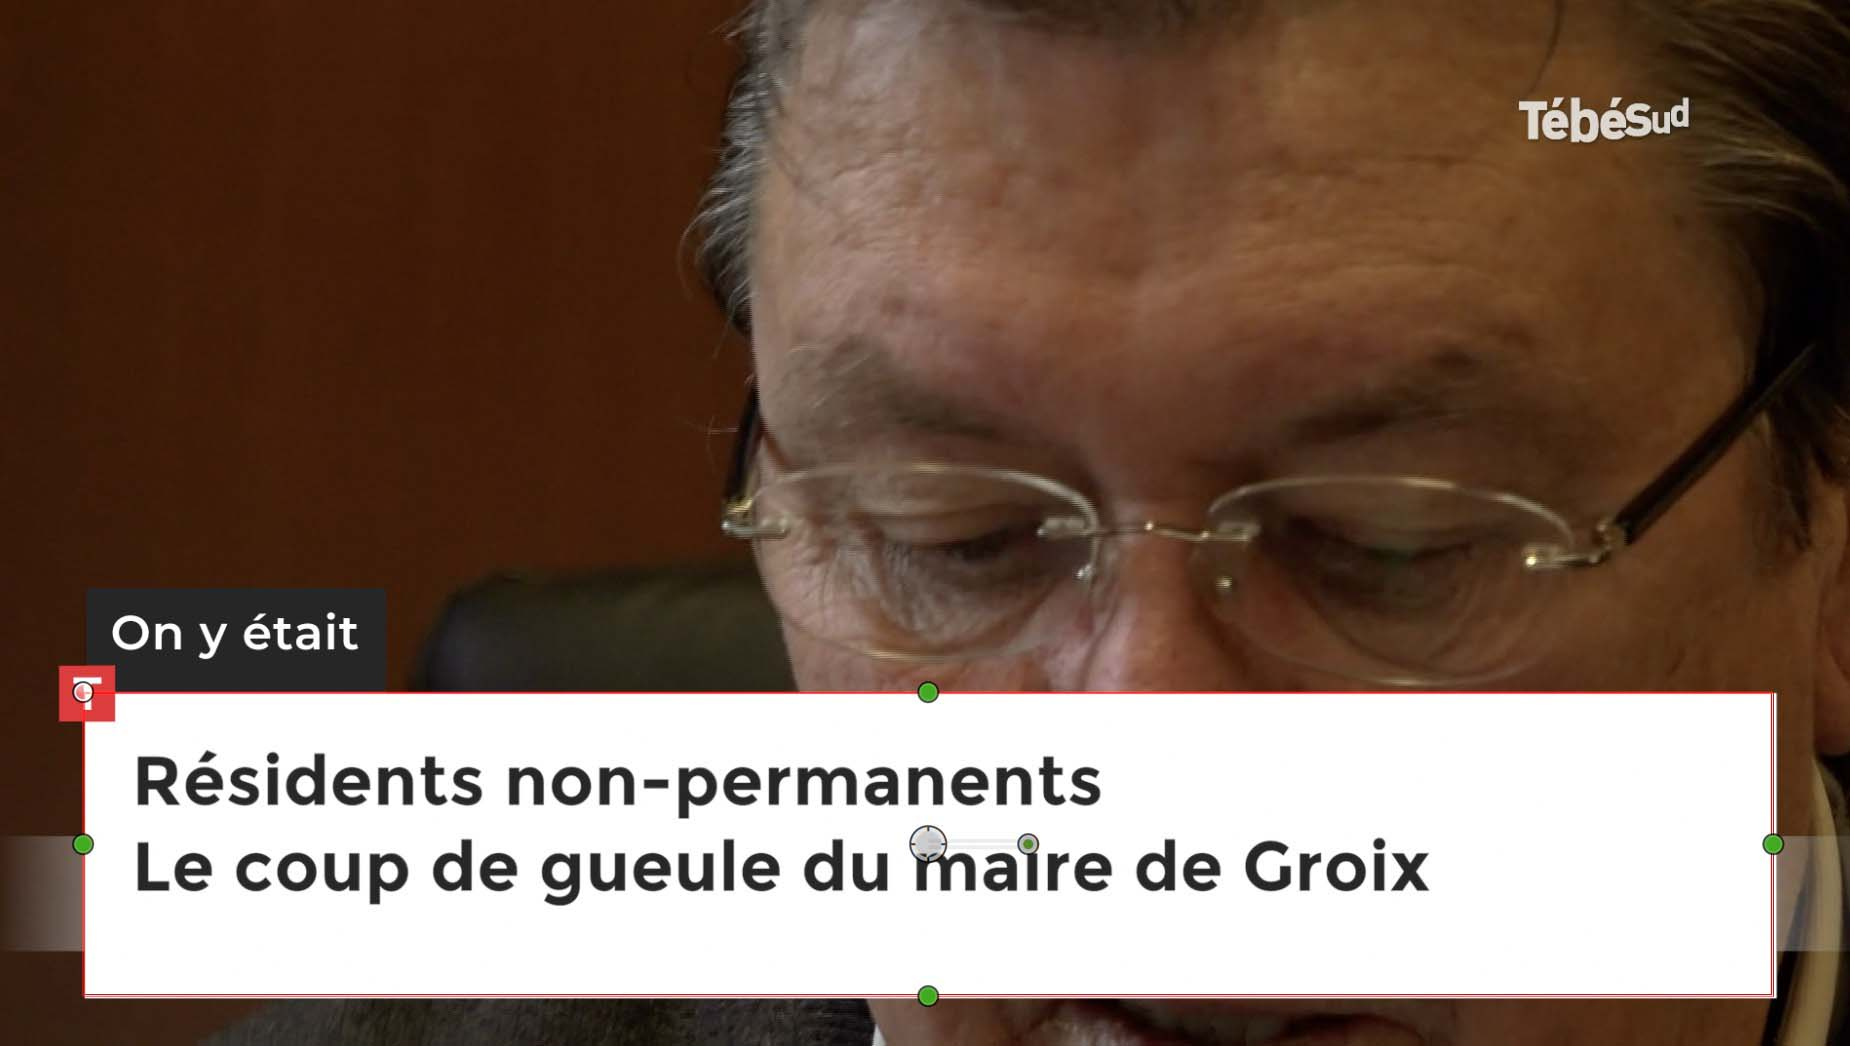 Résidents non-permanents Le coup de gueule du maire de Groix  (Le Télégramme)